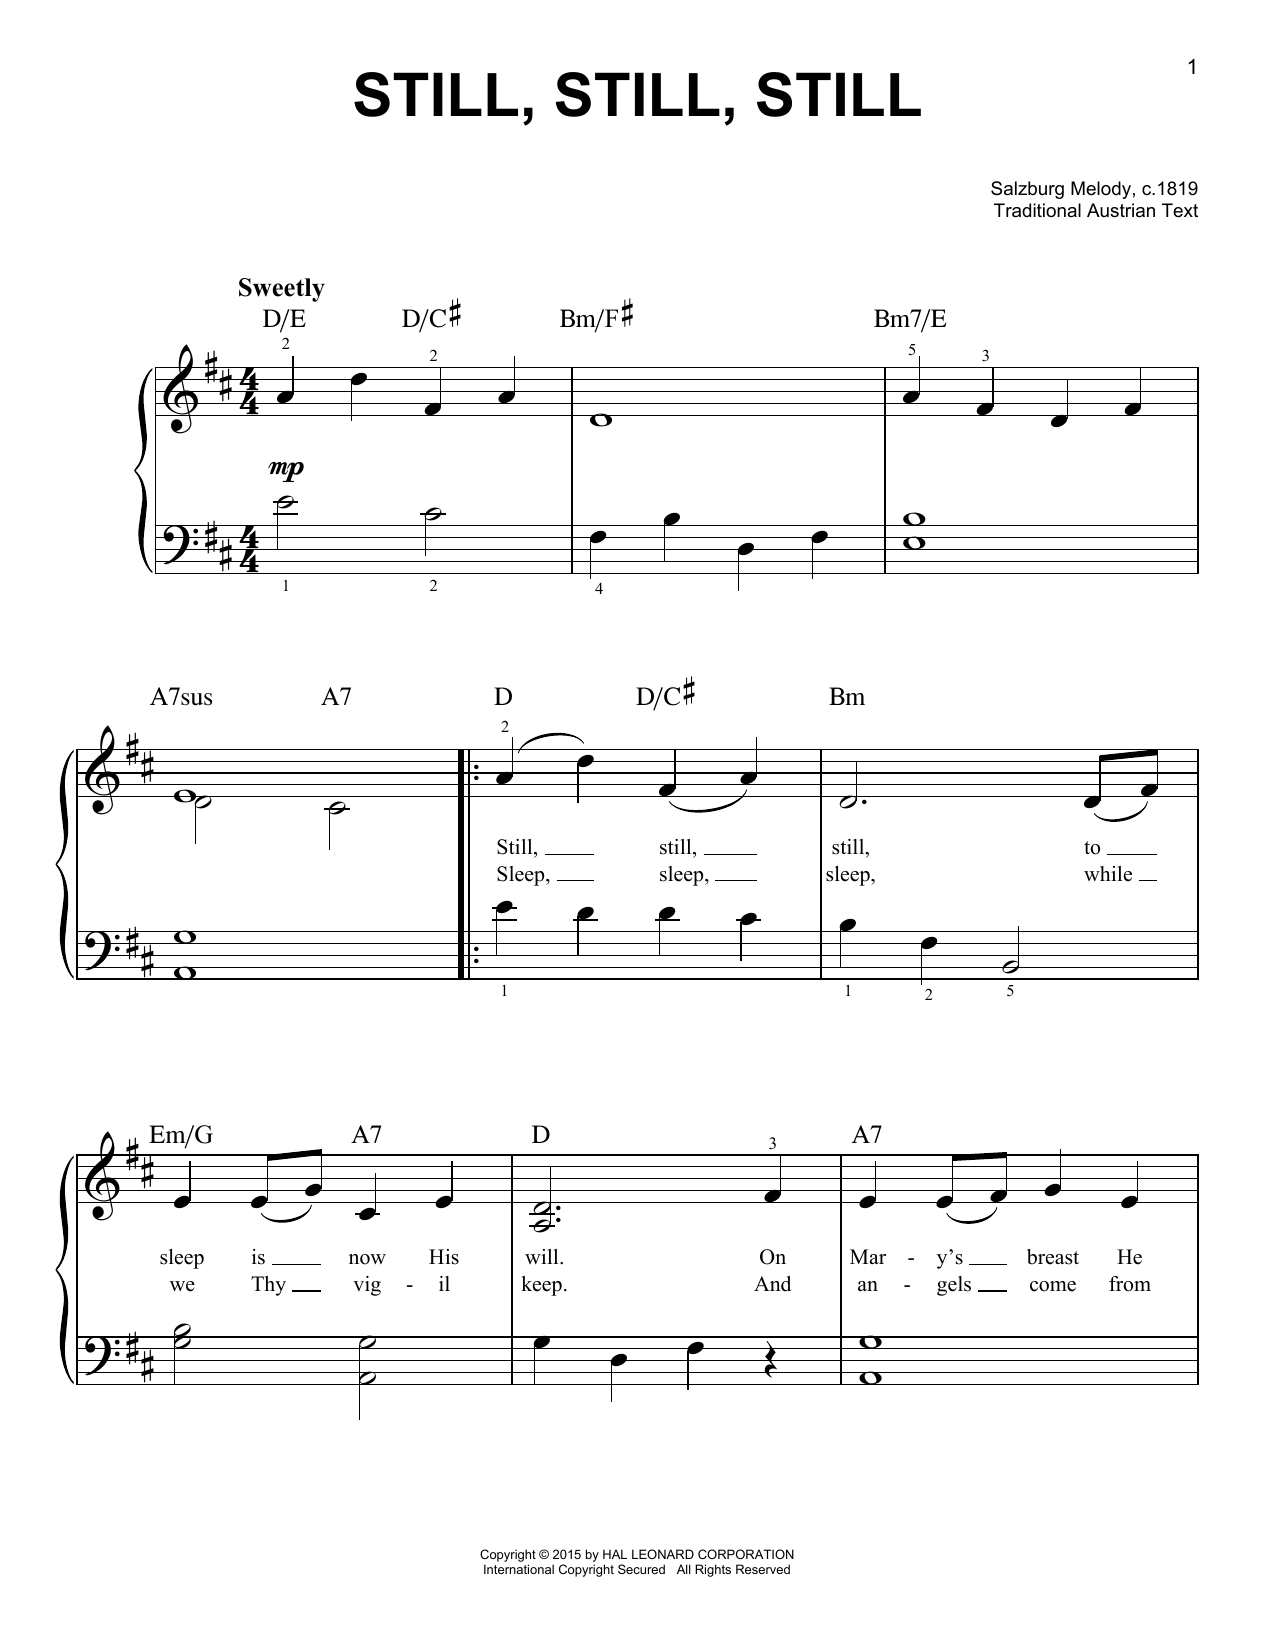 Salzburg Melody, c.1819 Still, Still, Still Sheet Music Notes & Chords for Clarinet Duet - Download or Print PDF